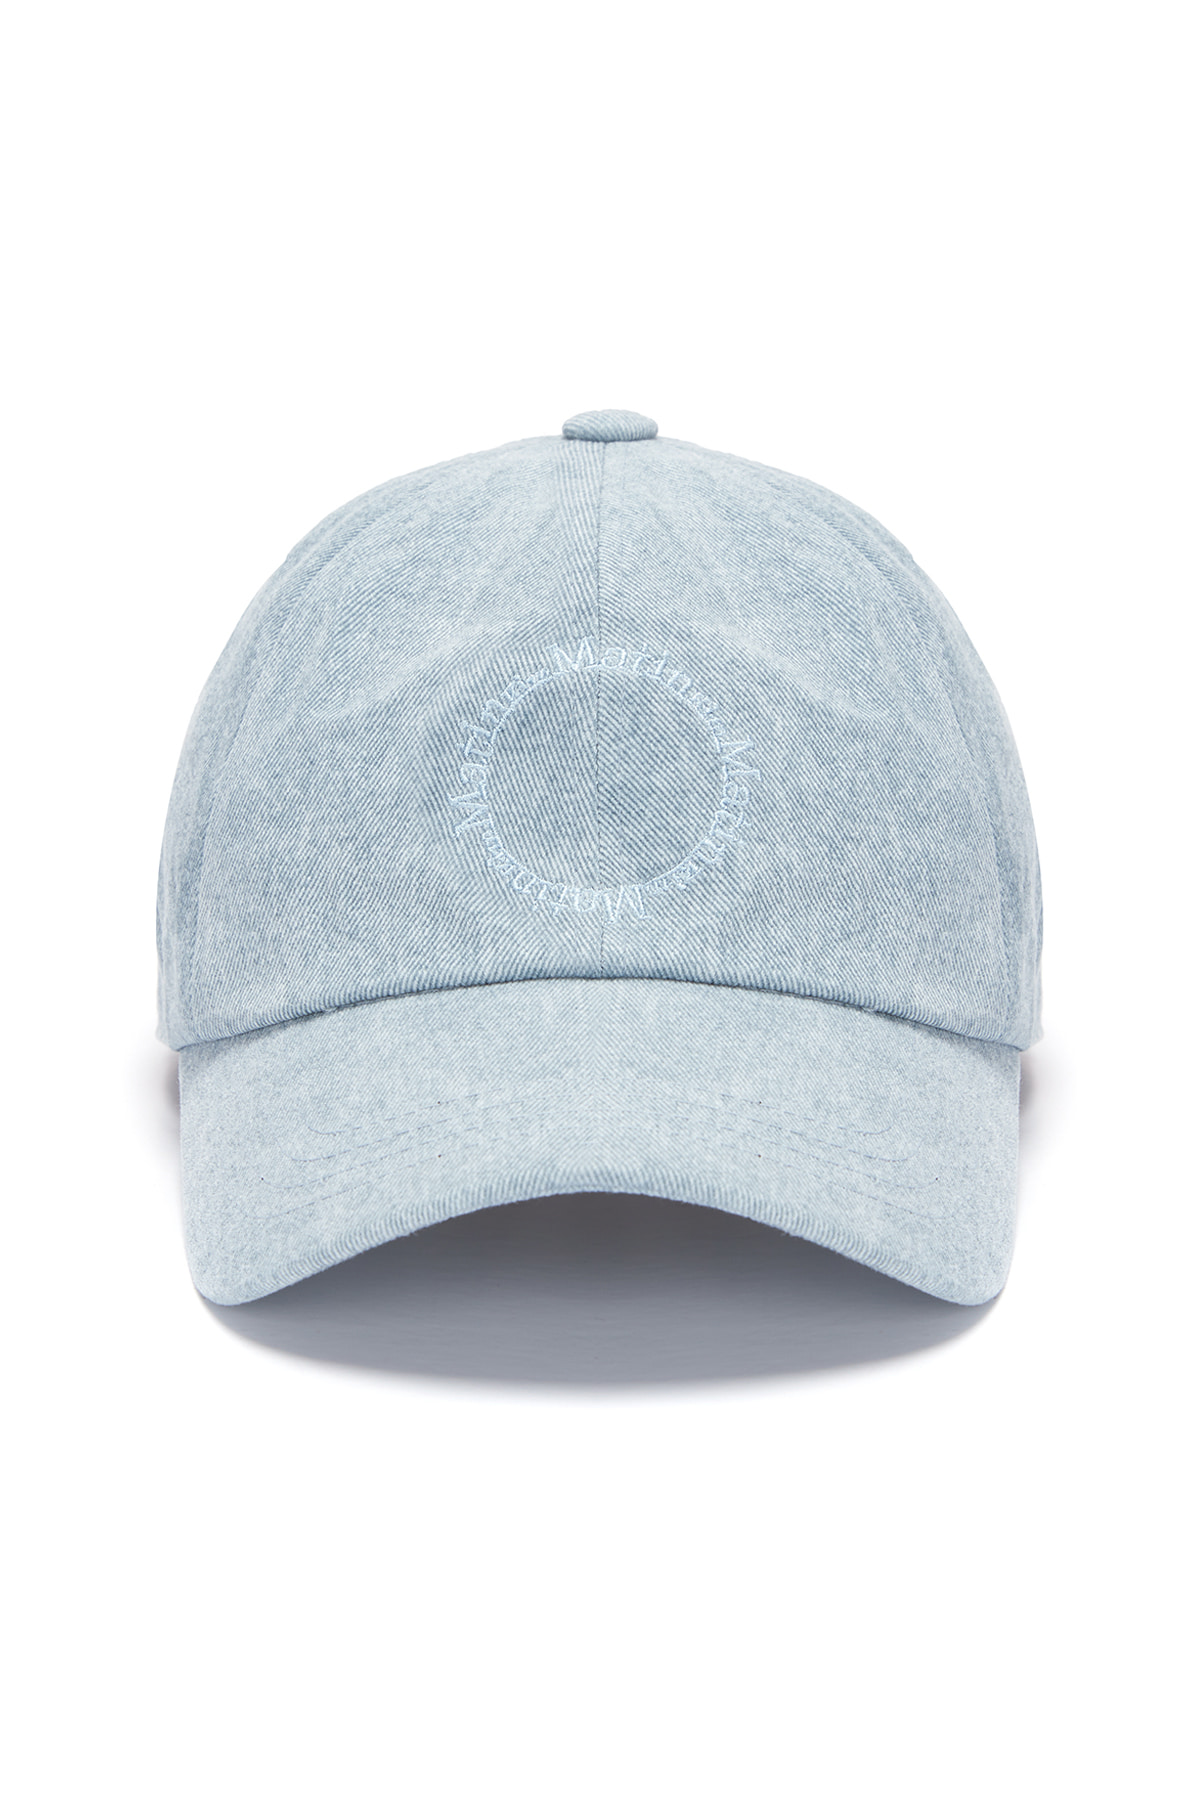 MACARON LOGO BALL CAP IN BLUE